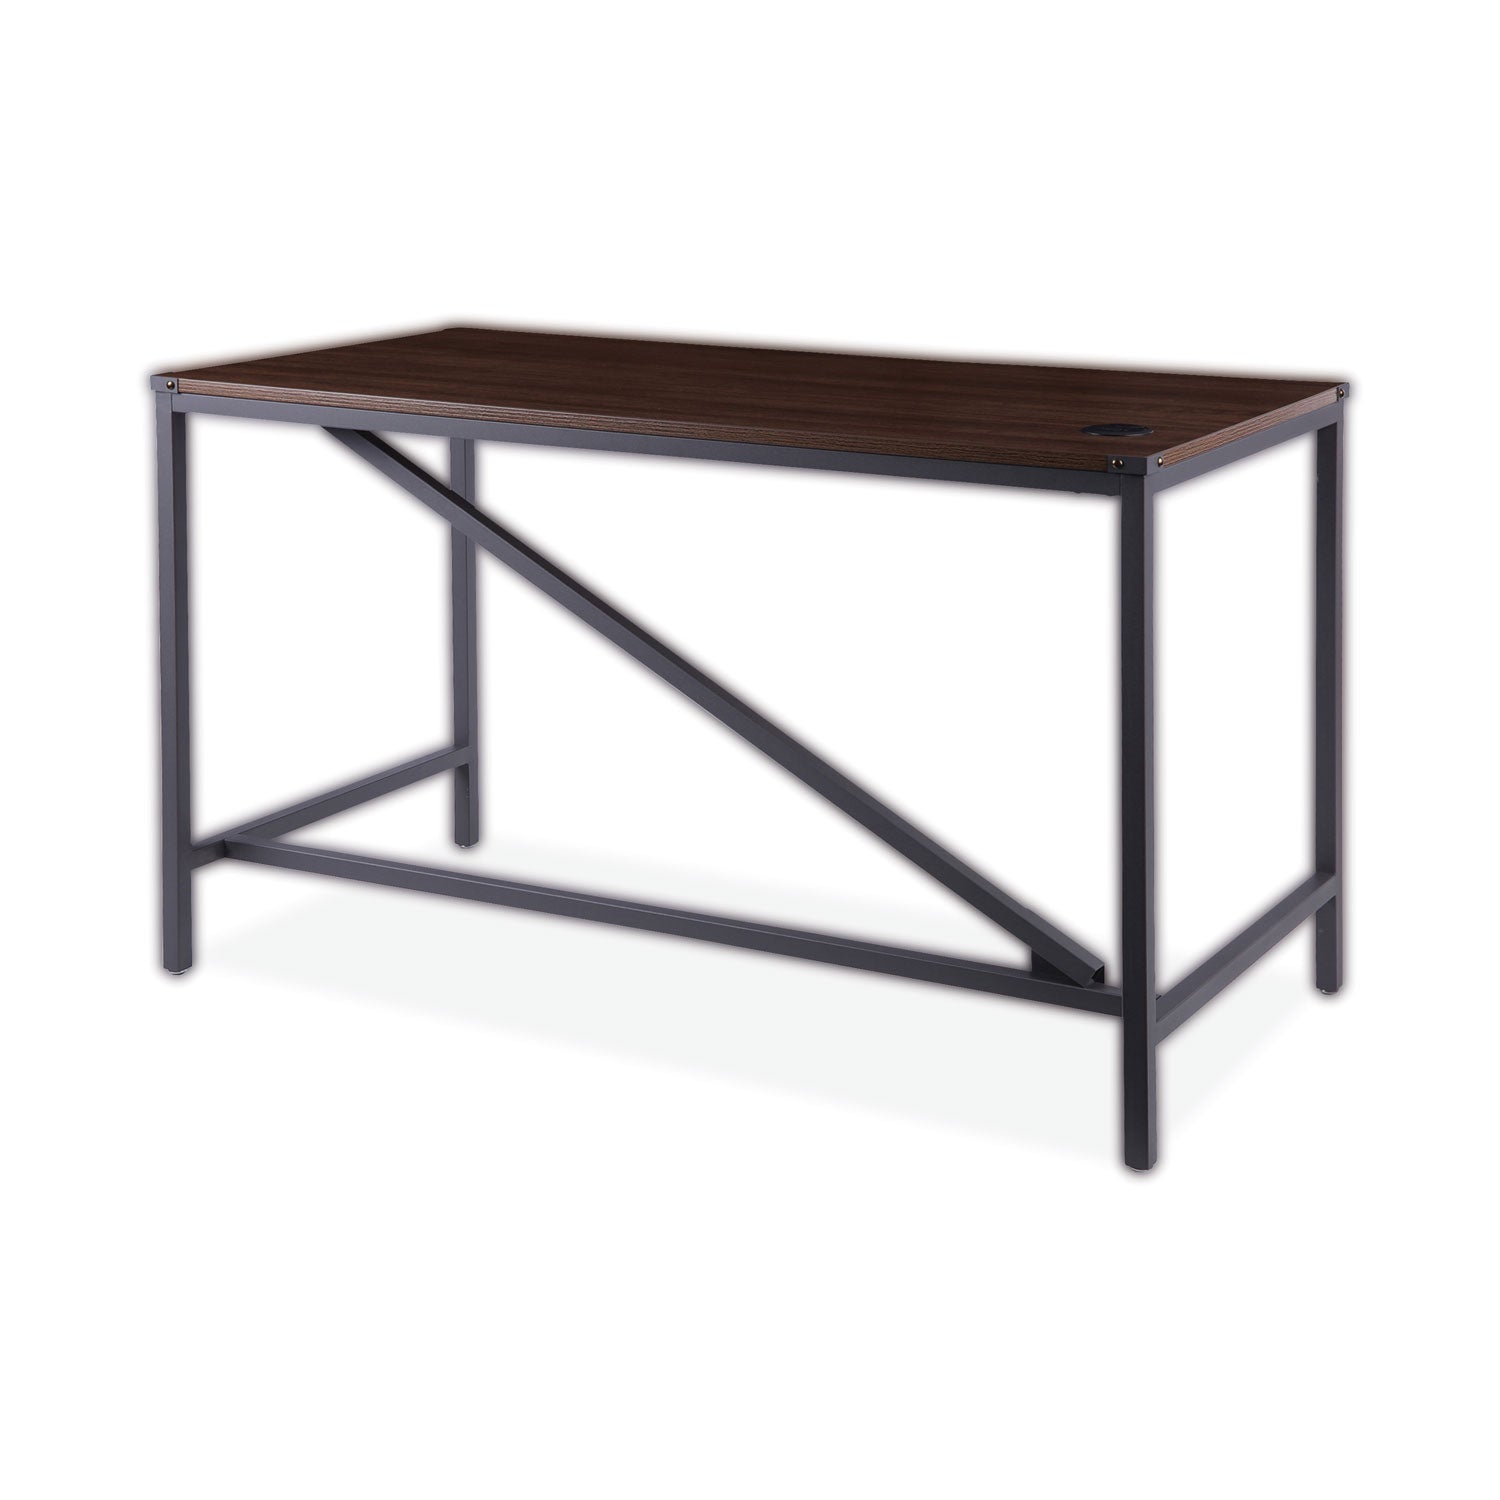 industrial-series-table-desk-4725-x-2363-x-295-modern-walnut_aleltd4824wa - 2